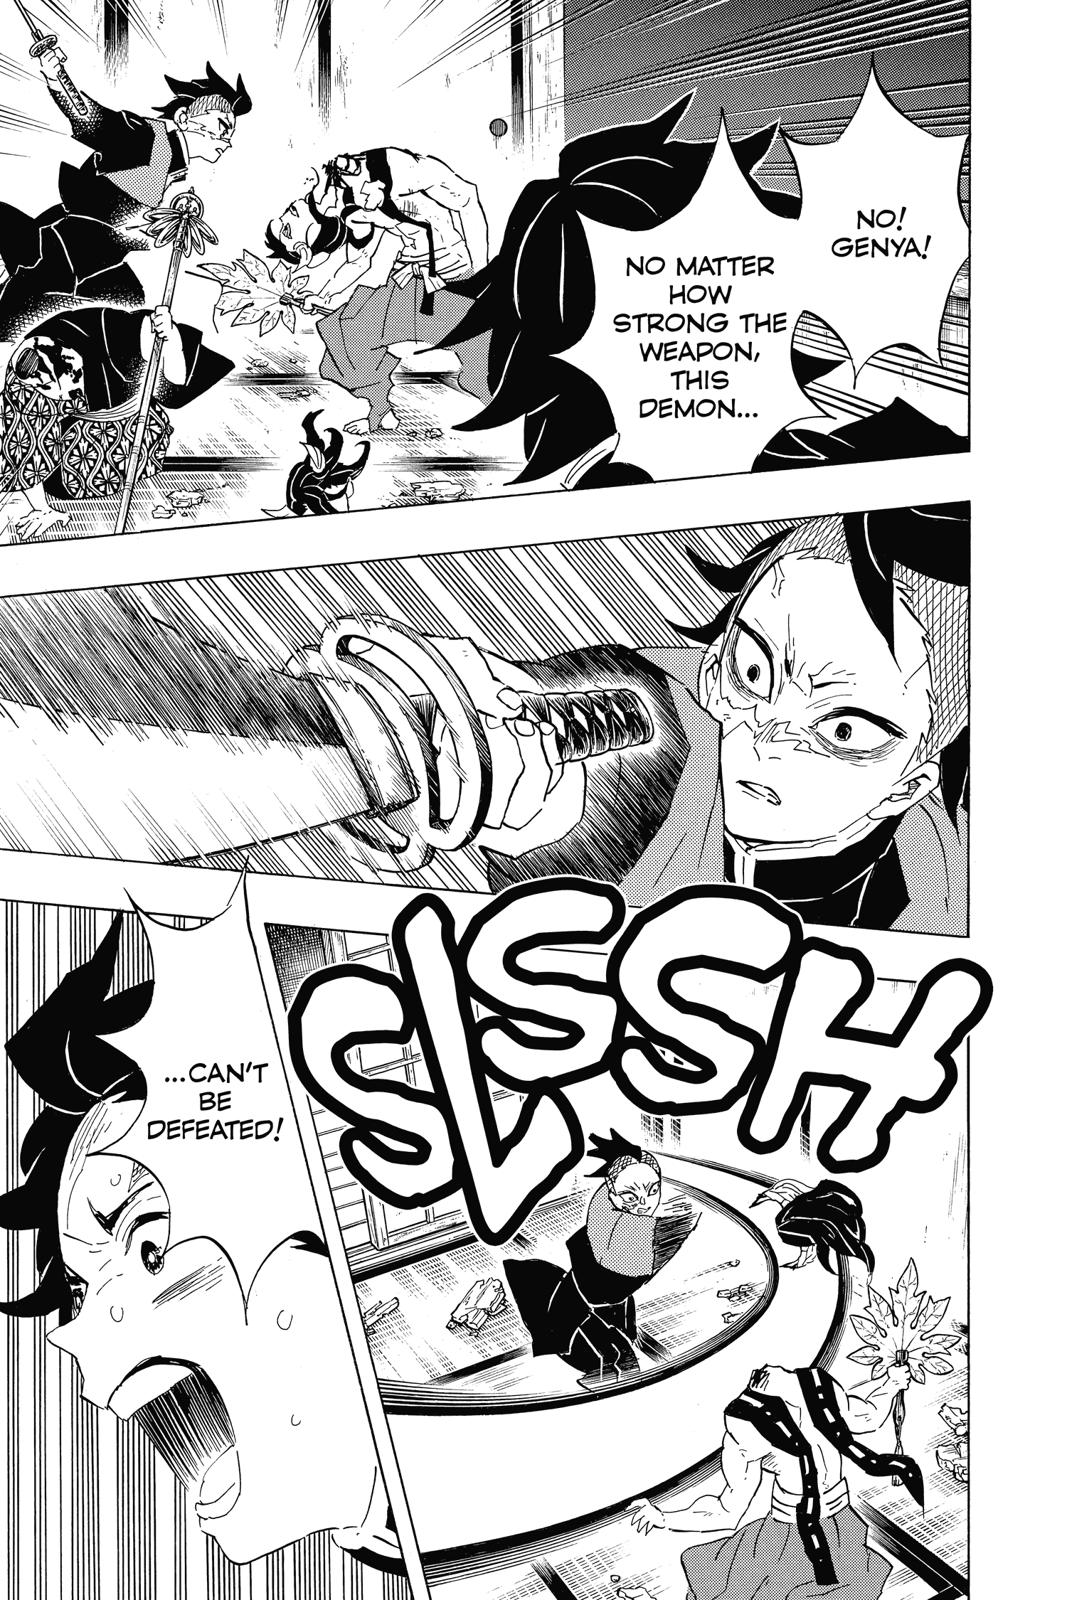 Demon Slayer Manga Manga Chapter - 107 - image 9